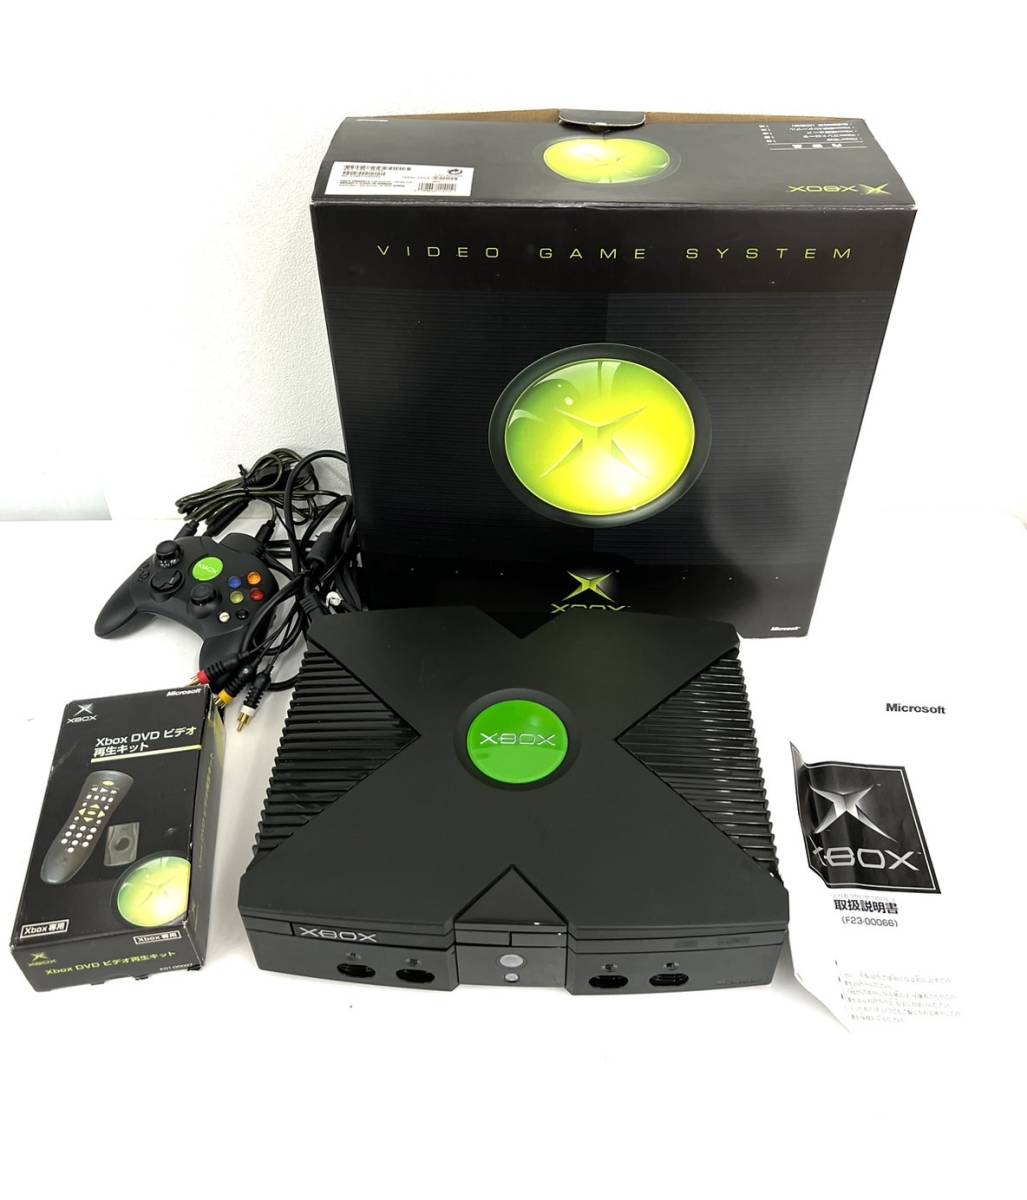 【動確済み】 初代 XBOX 本体 F23-00066 ビデオ再生キット付き 家庭用ゲーム本体 販売特別価格